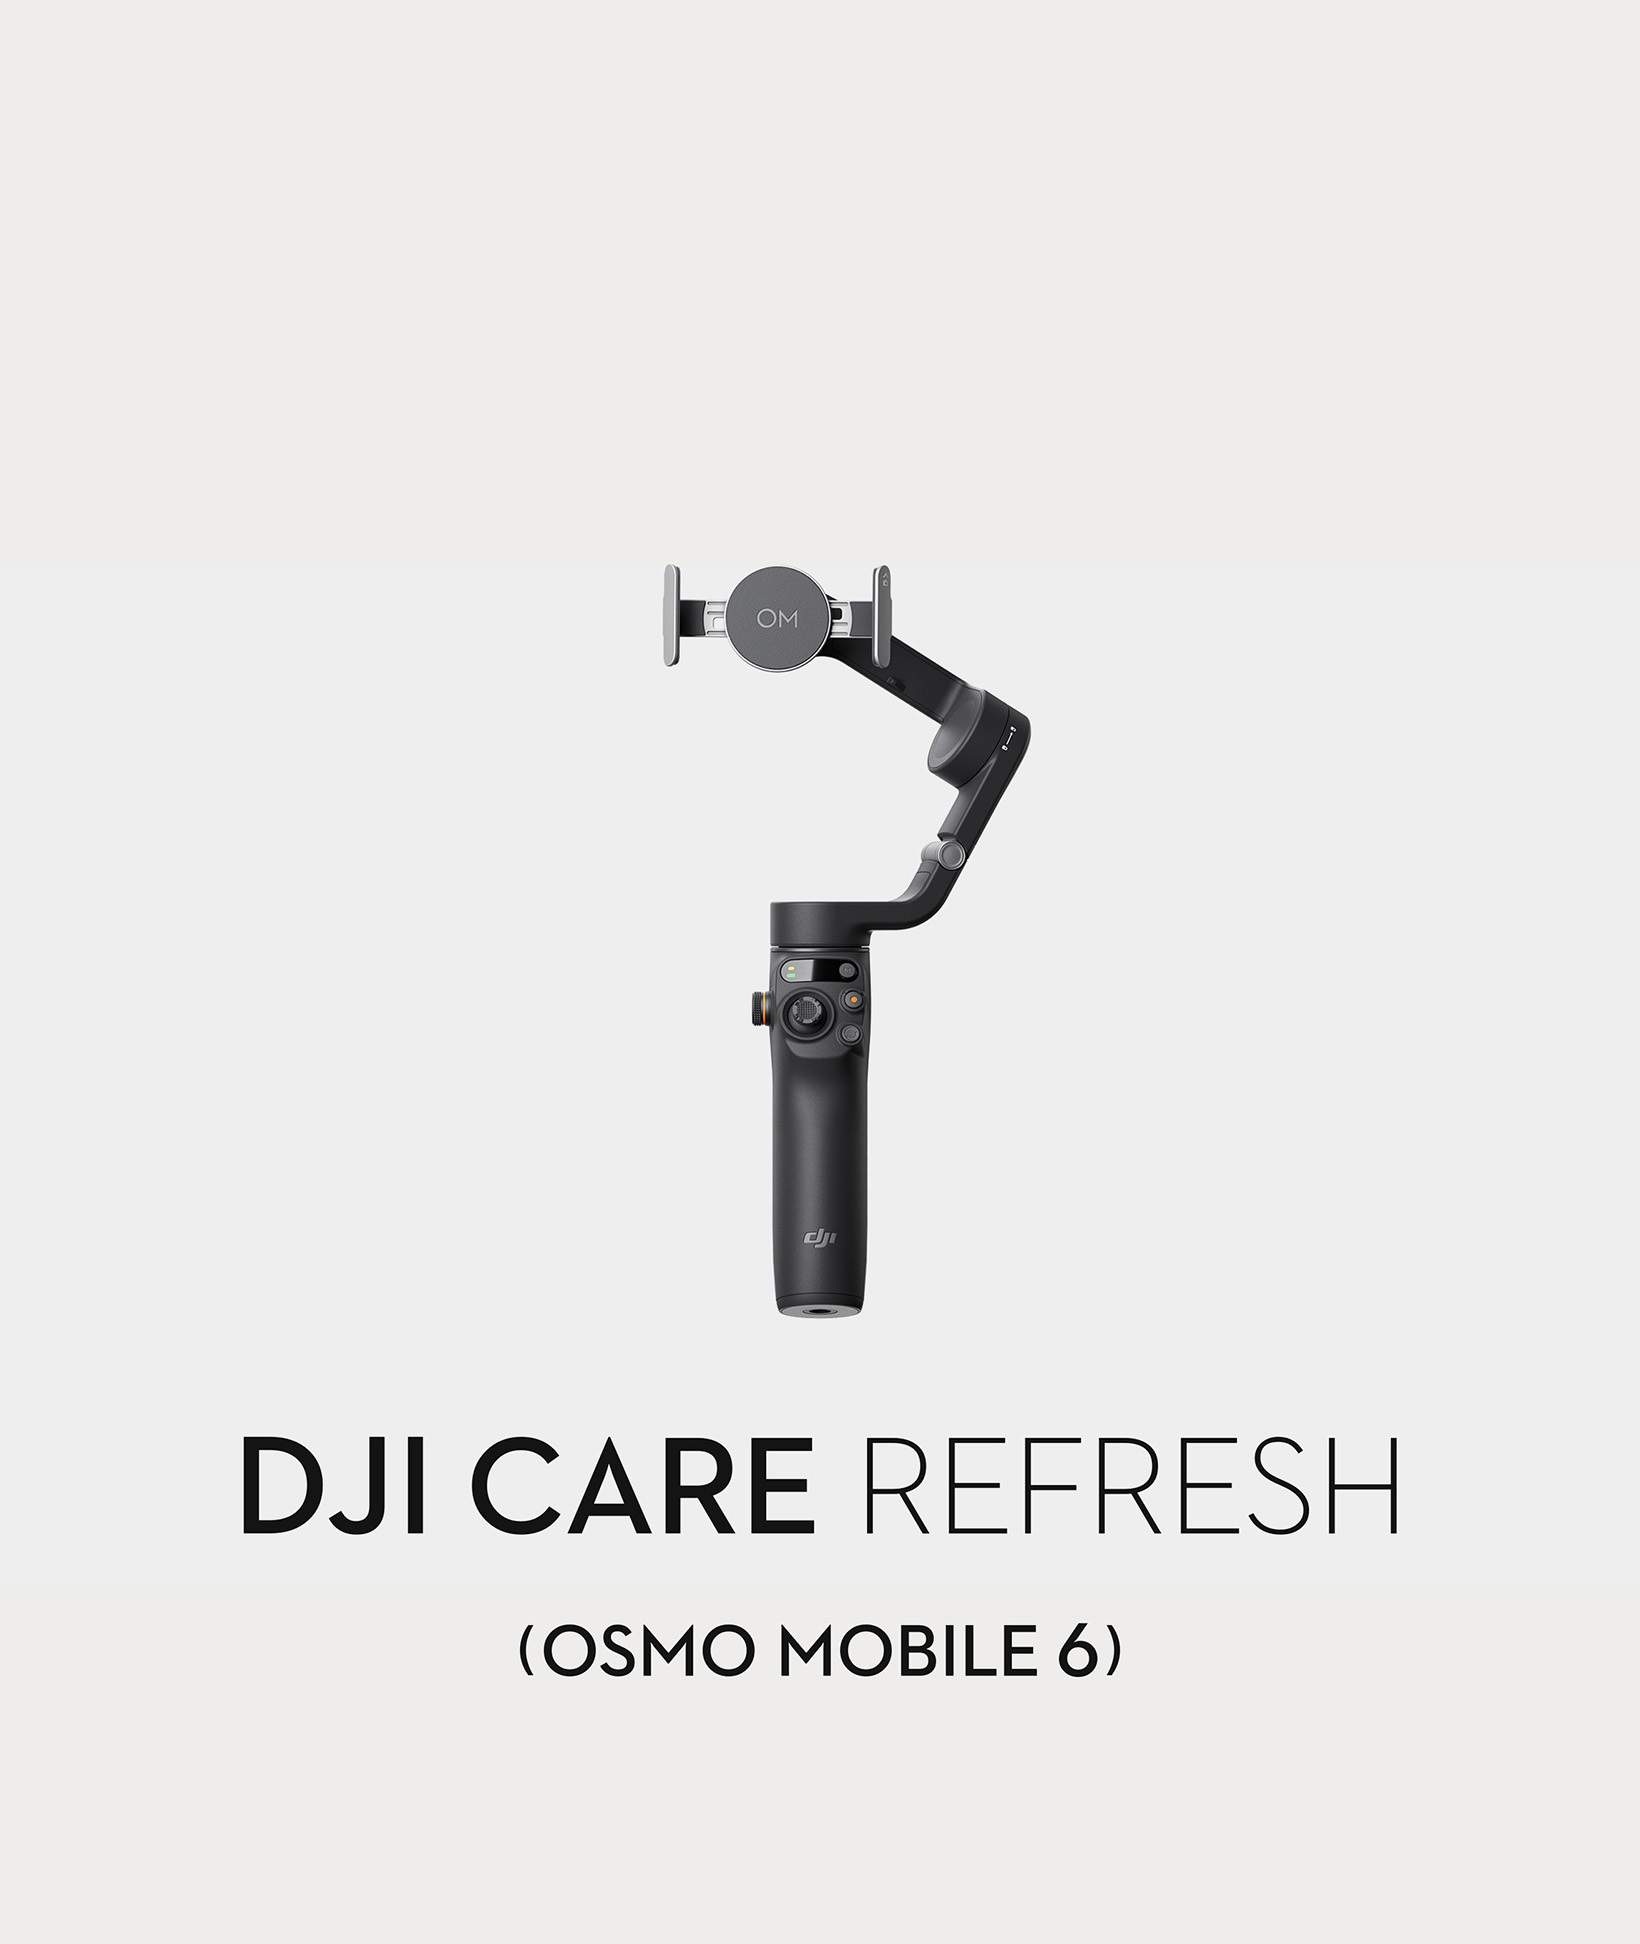 DJI - Meet Osmo Mobile 6 